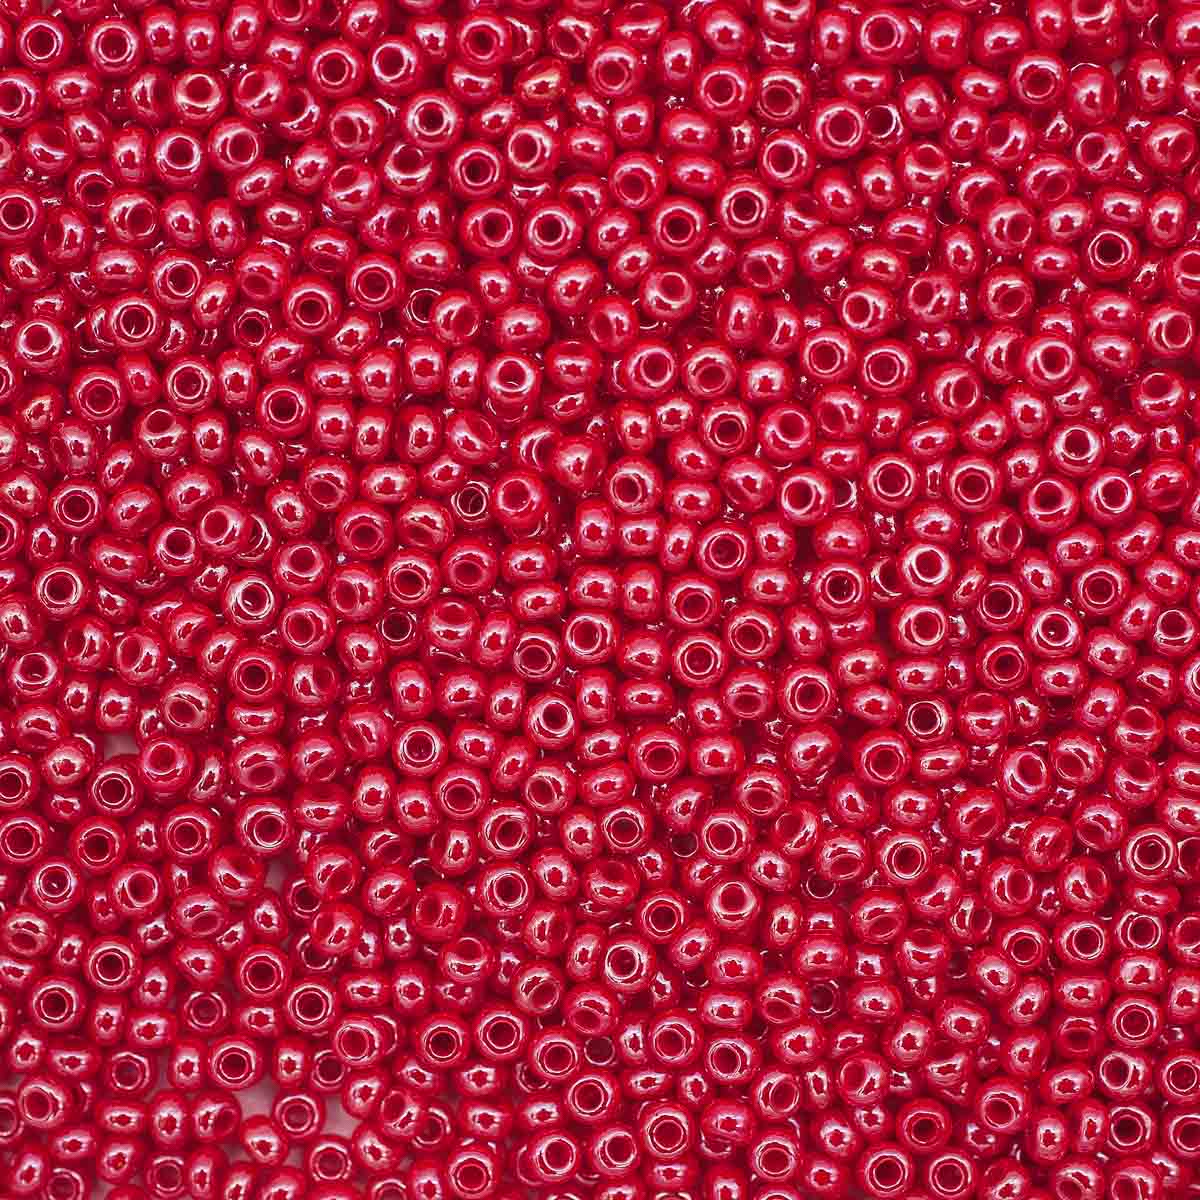 

Бисер Preciosa непрозрачный с жемчужным покрытием 10/0 (98170) 331-19001-10/0, 20 г, 5 шт, Красный